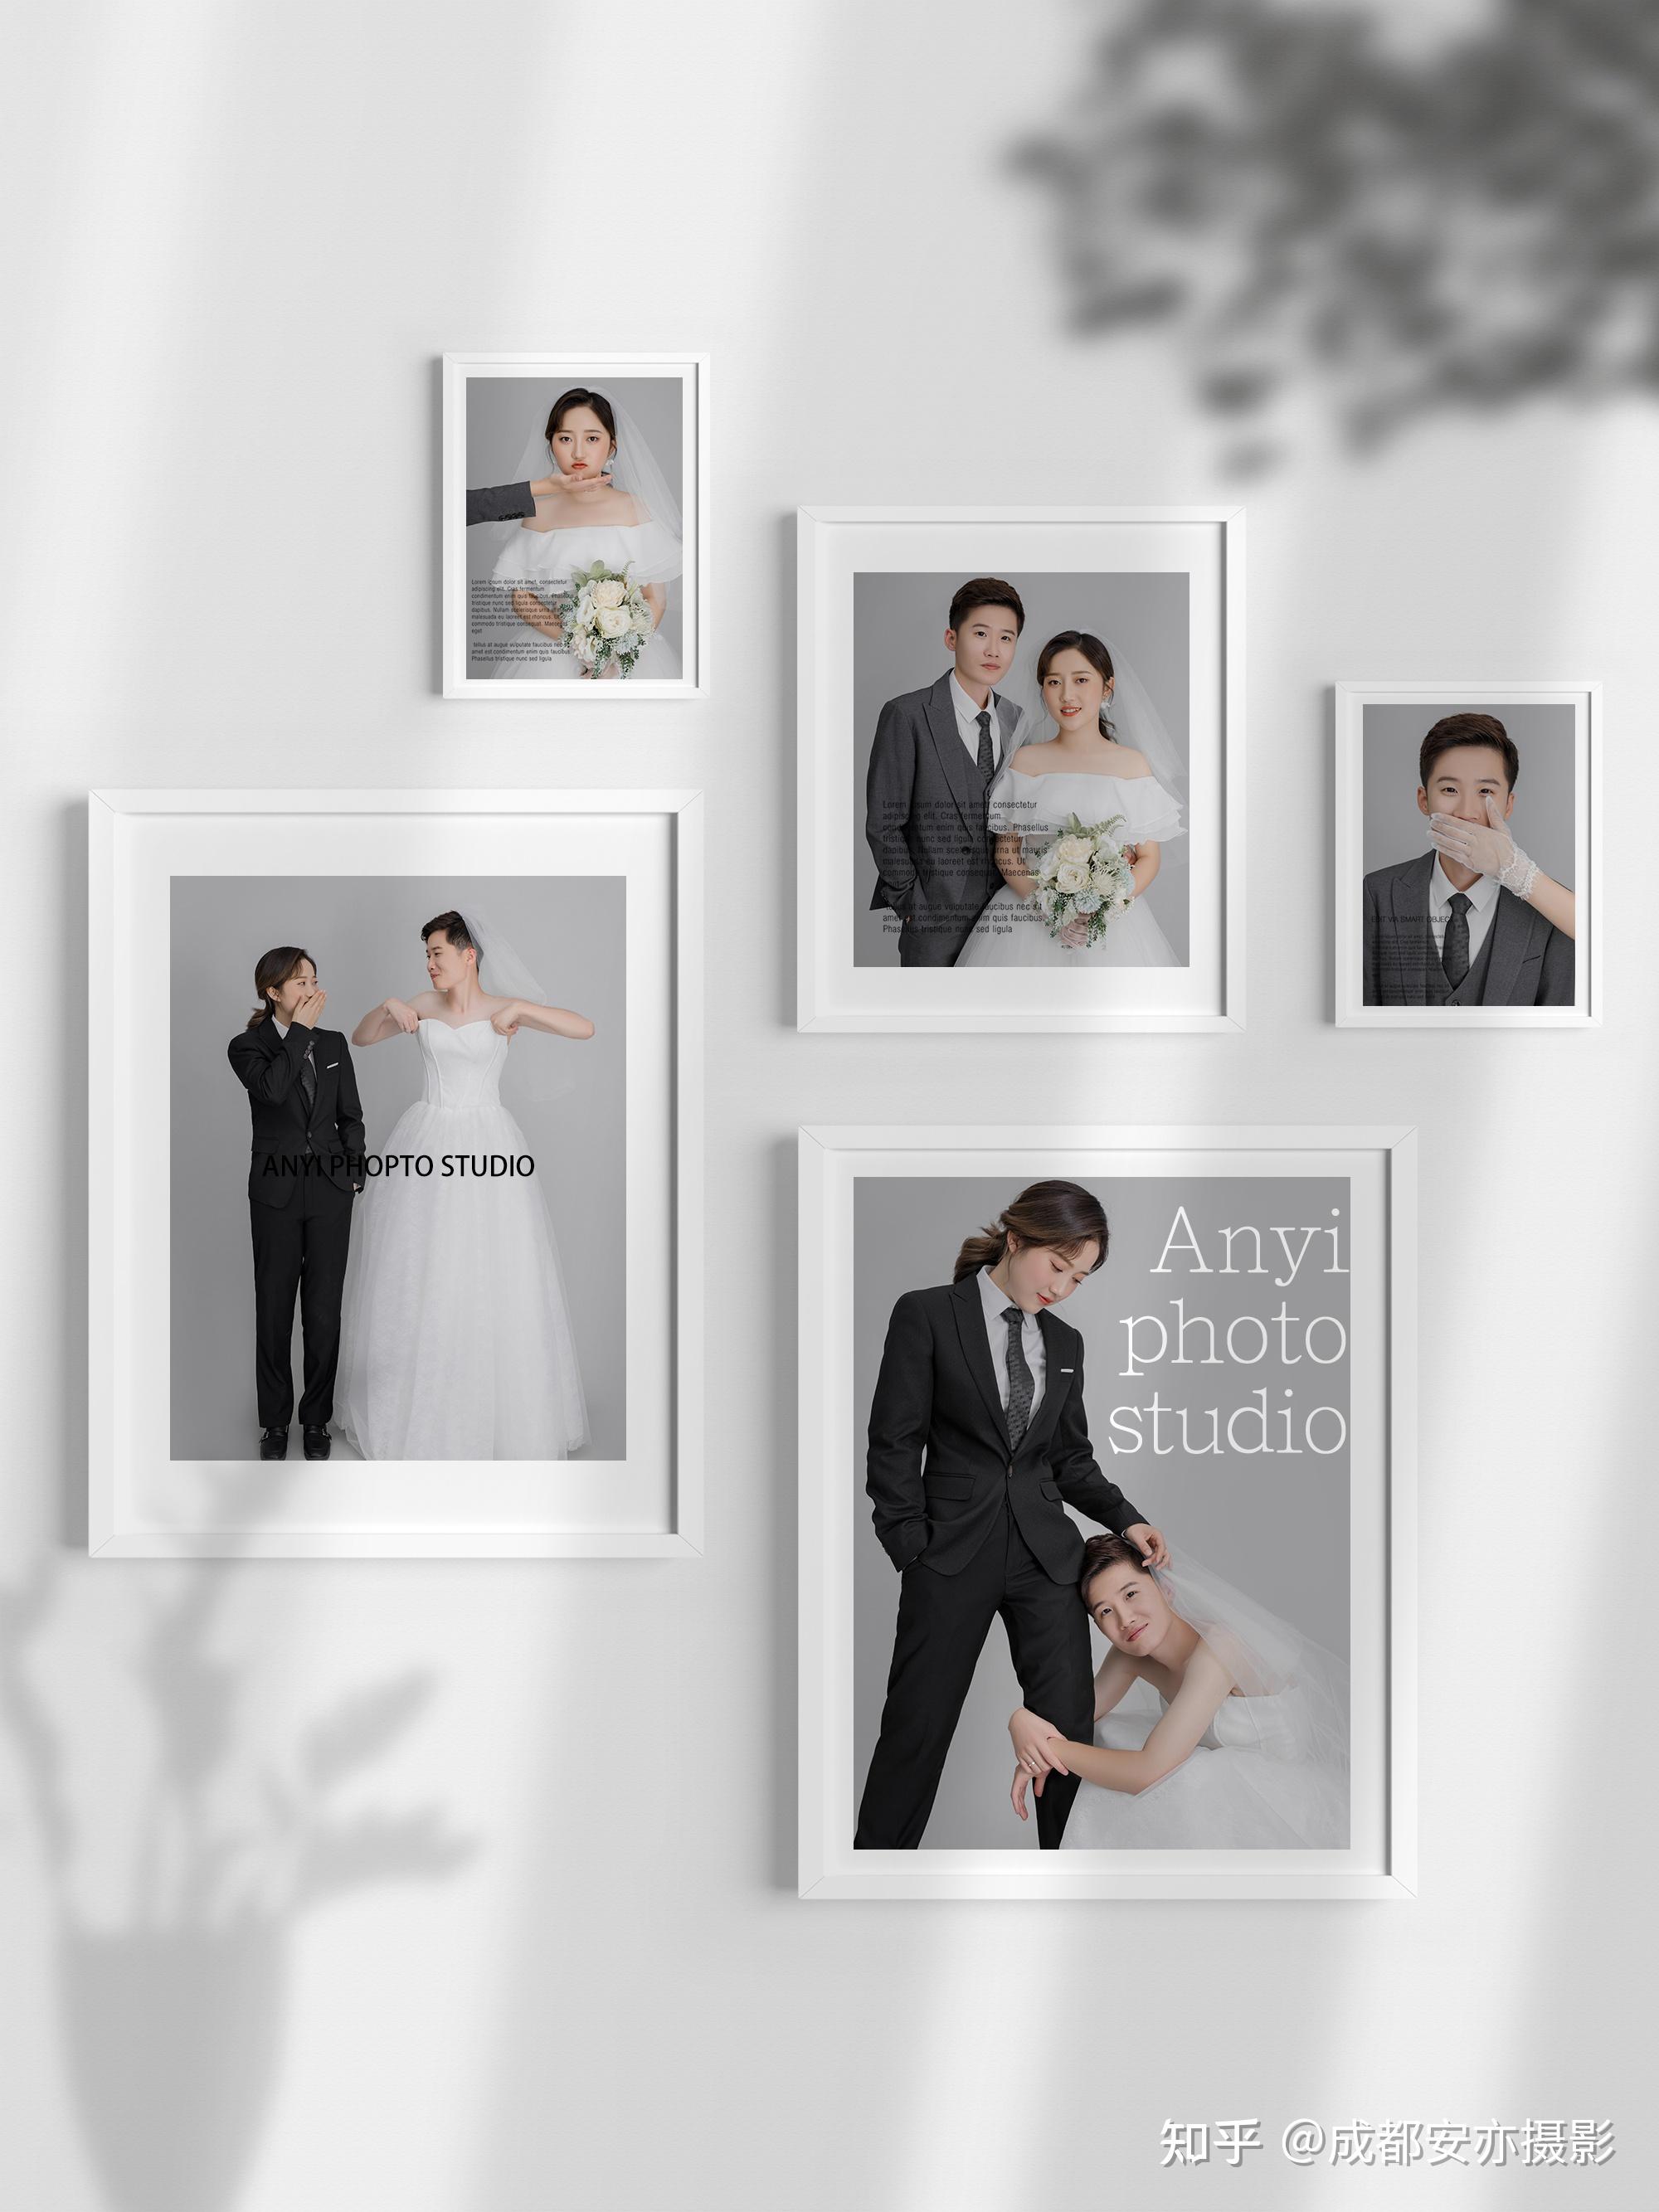 婚纱照拍什么风格更适合做相框照片墙?